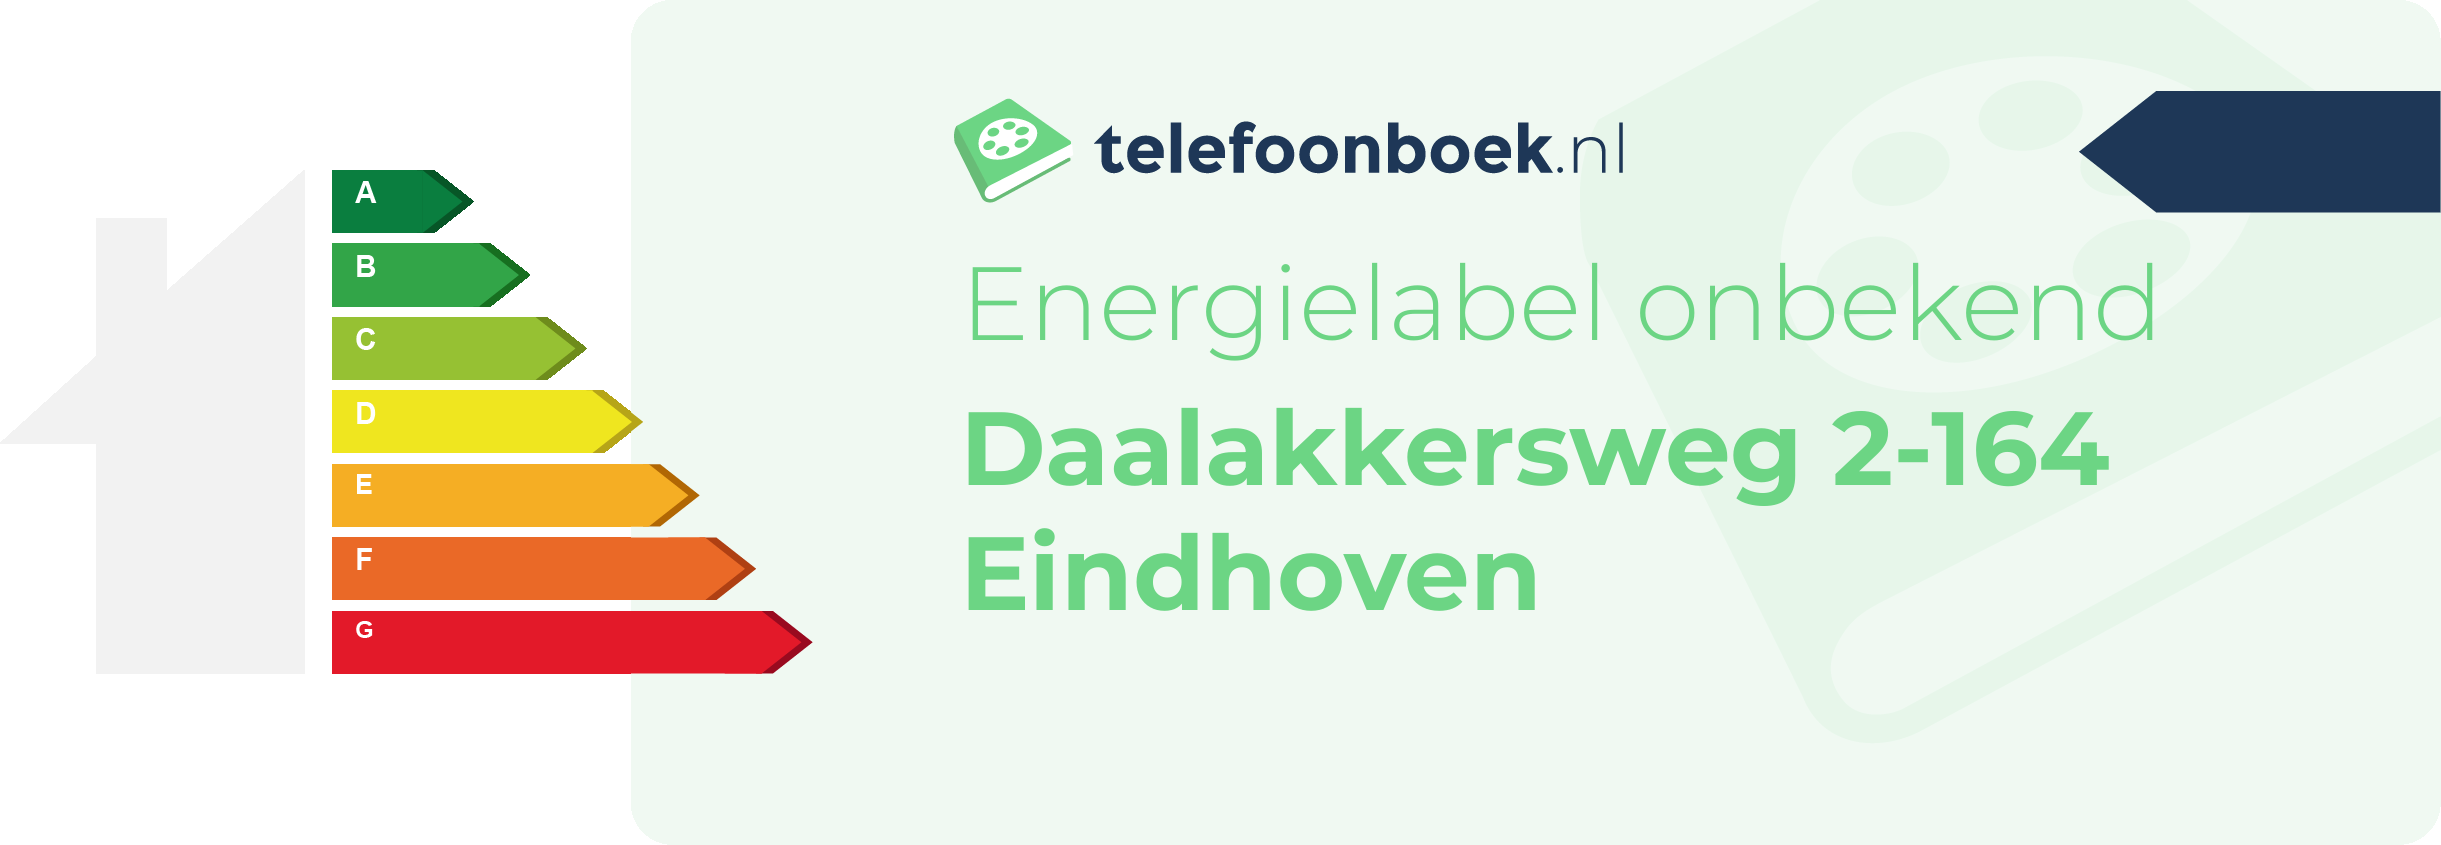 Energielabel Daalakkersweg 2-164 Eindhoven